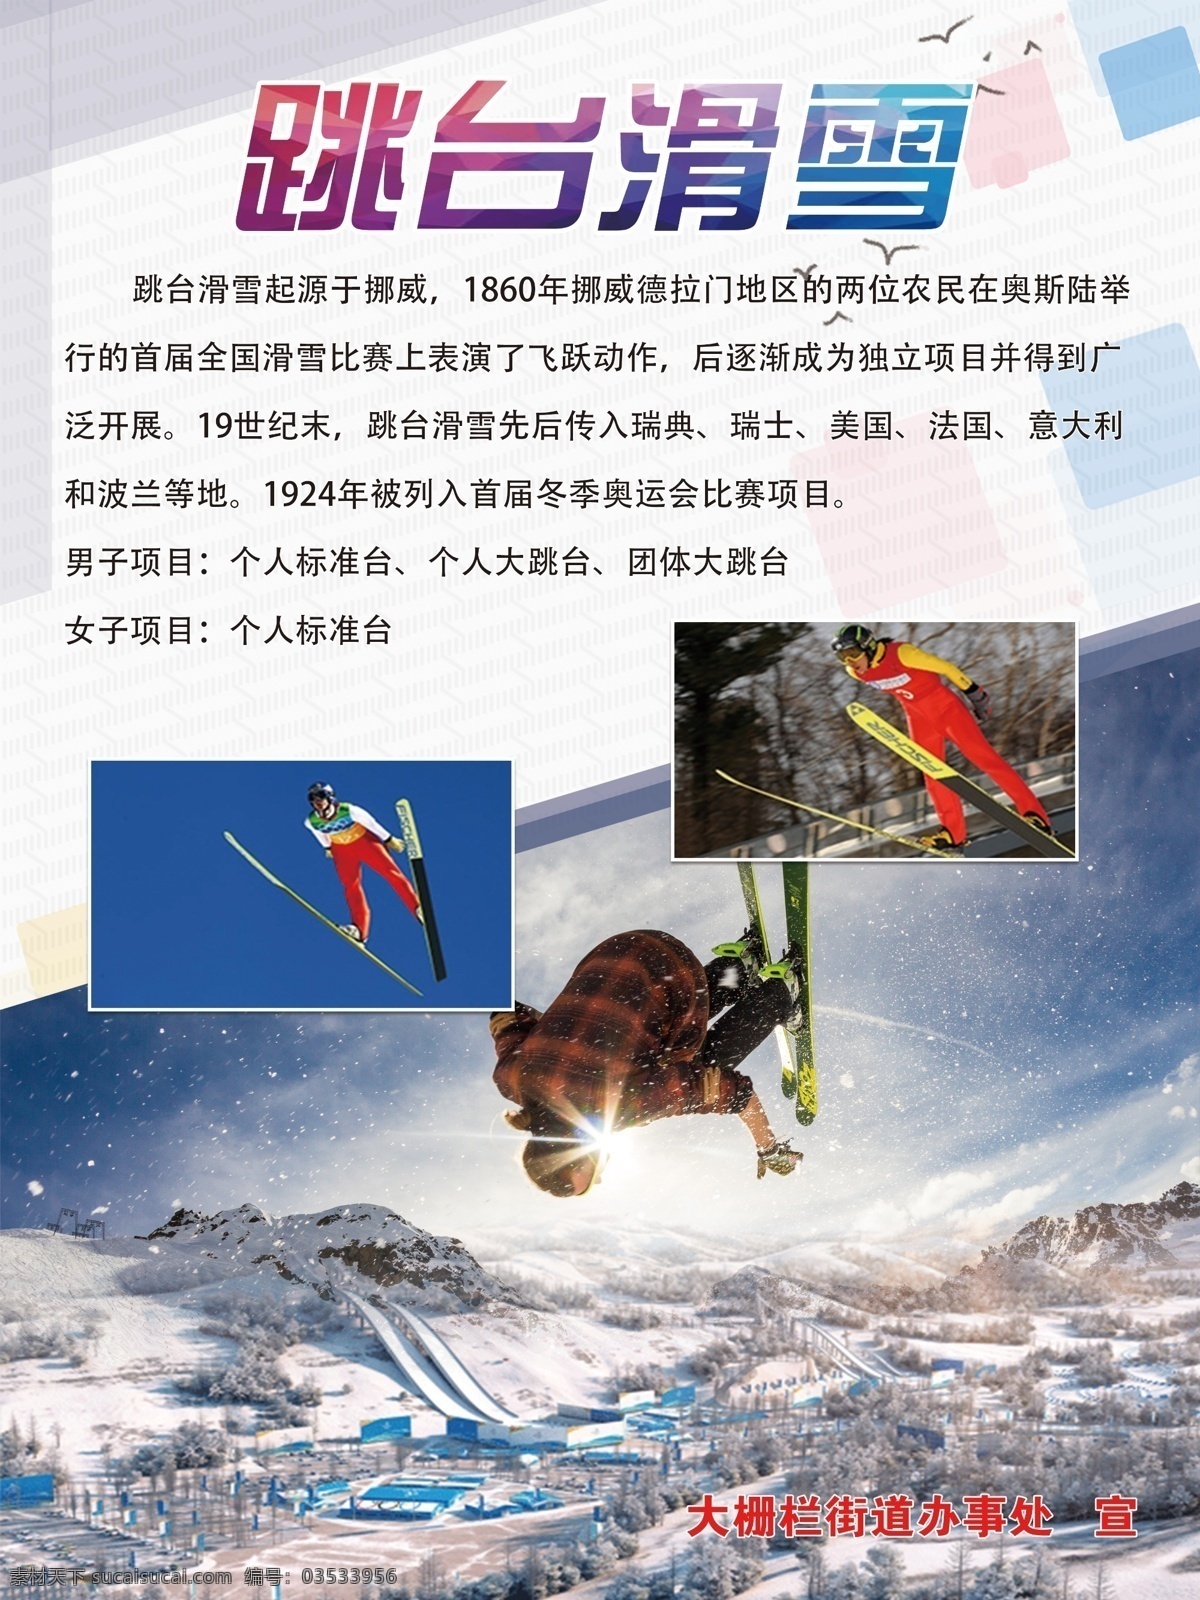 冬季跳台 跳台滑雪项目 滑雪 体育运动 体育项目